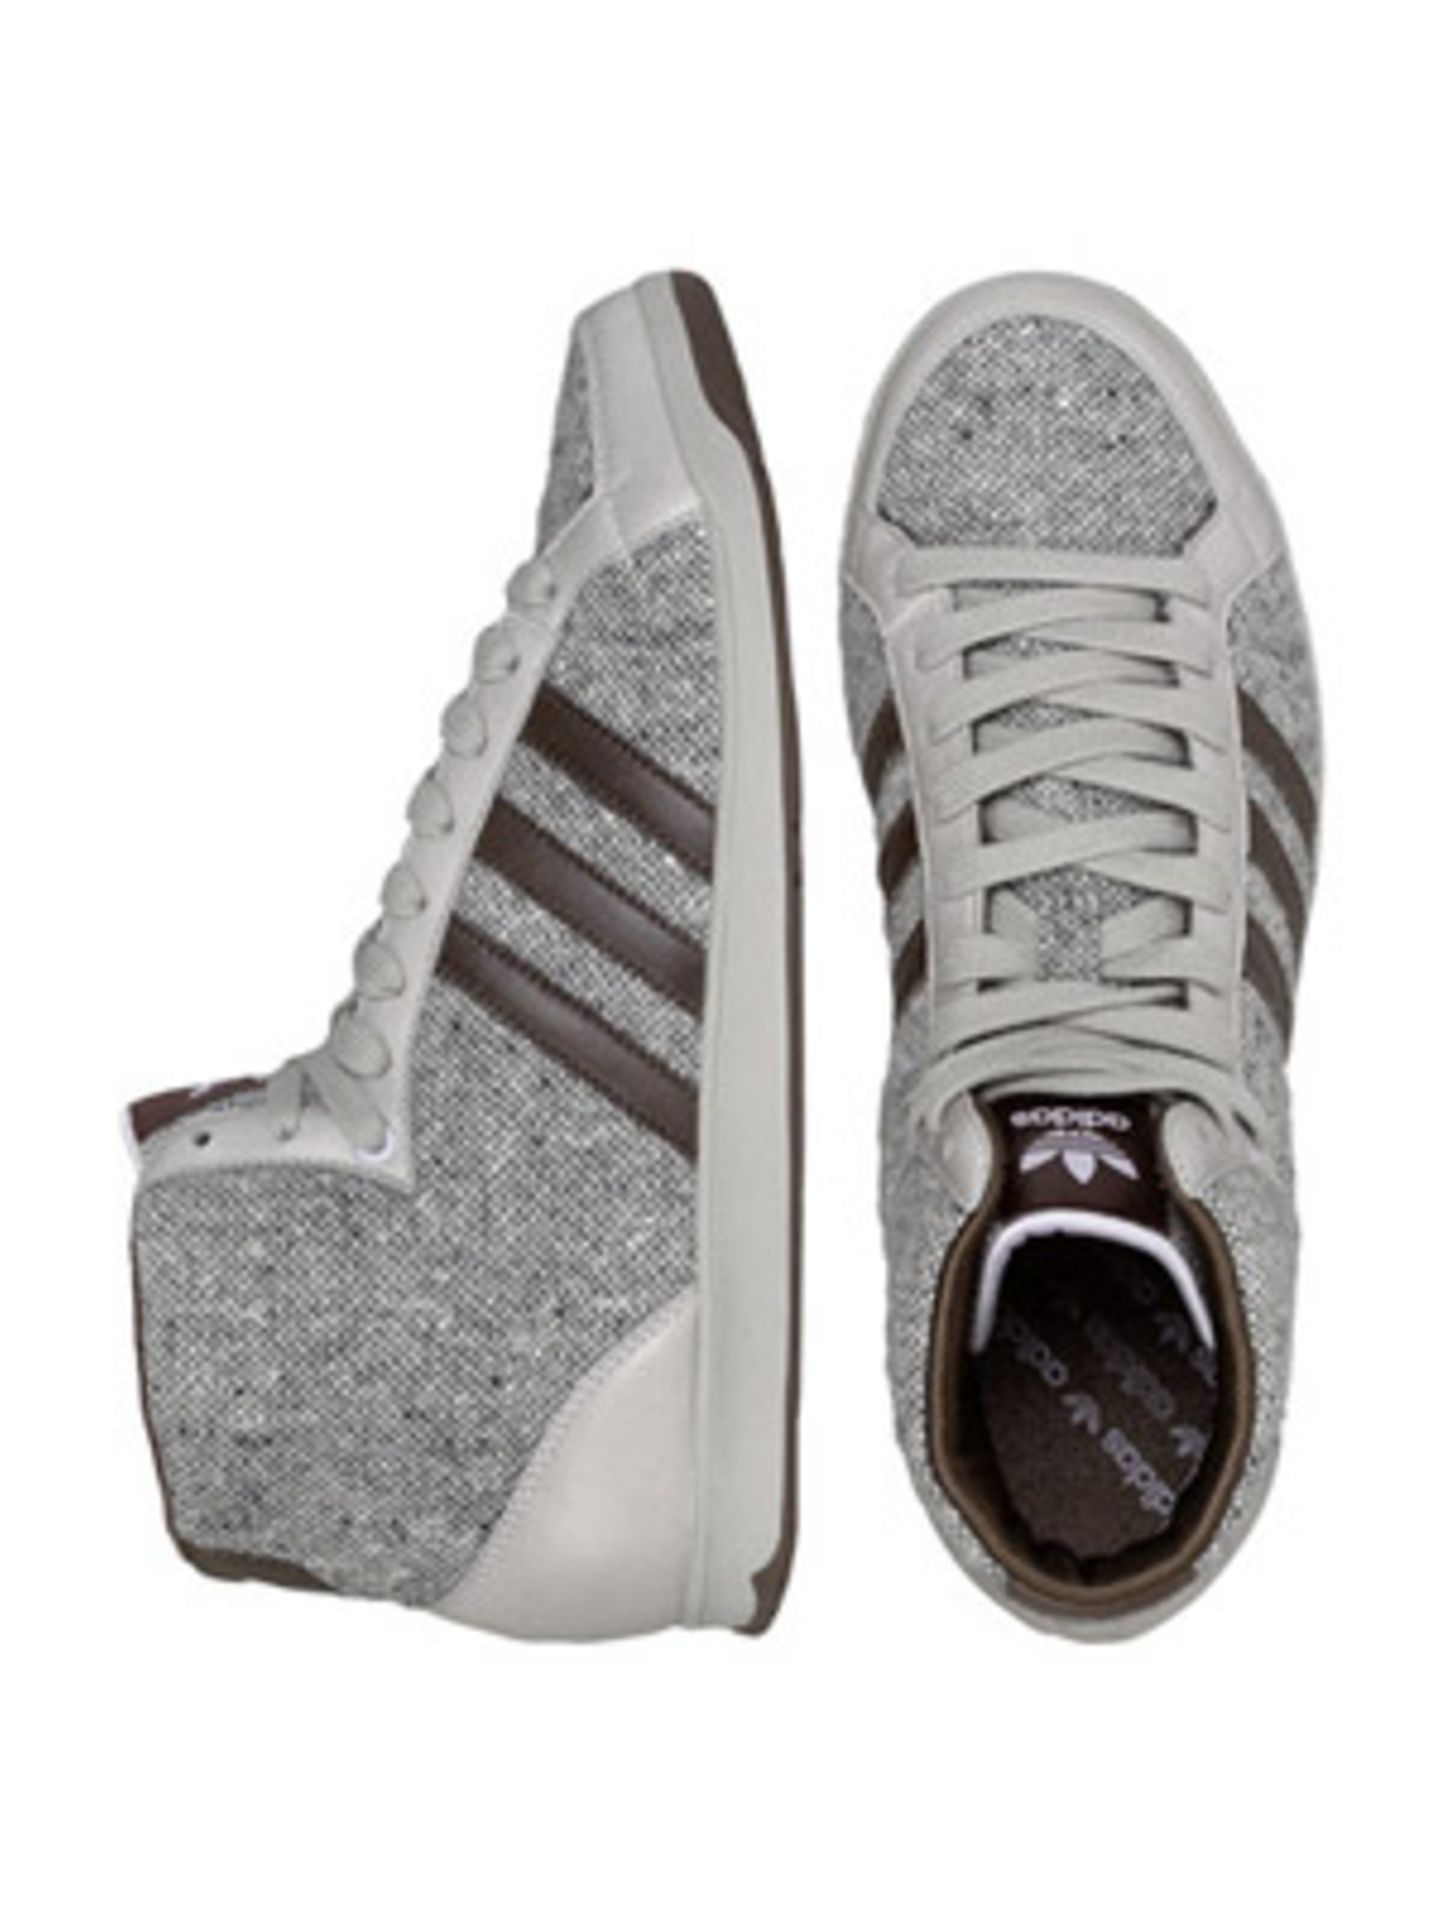 Tweed-Schuh in stylischem Grau von Adidas, um 80 Euro. Über  www.frontlineshop.com.